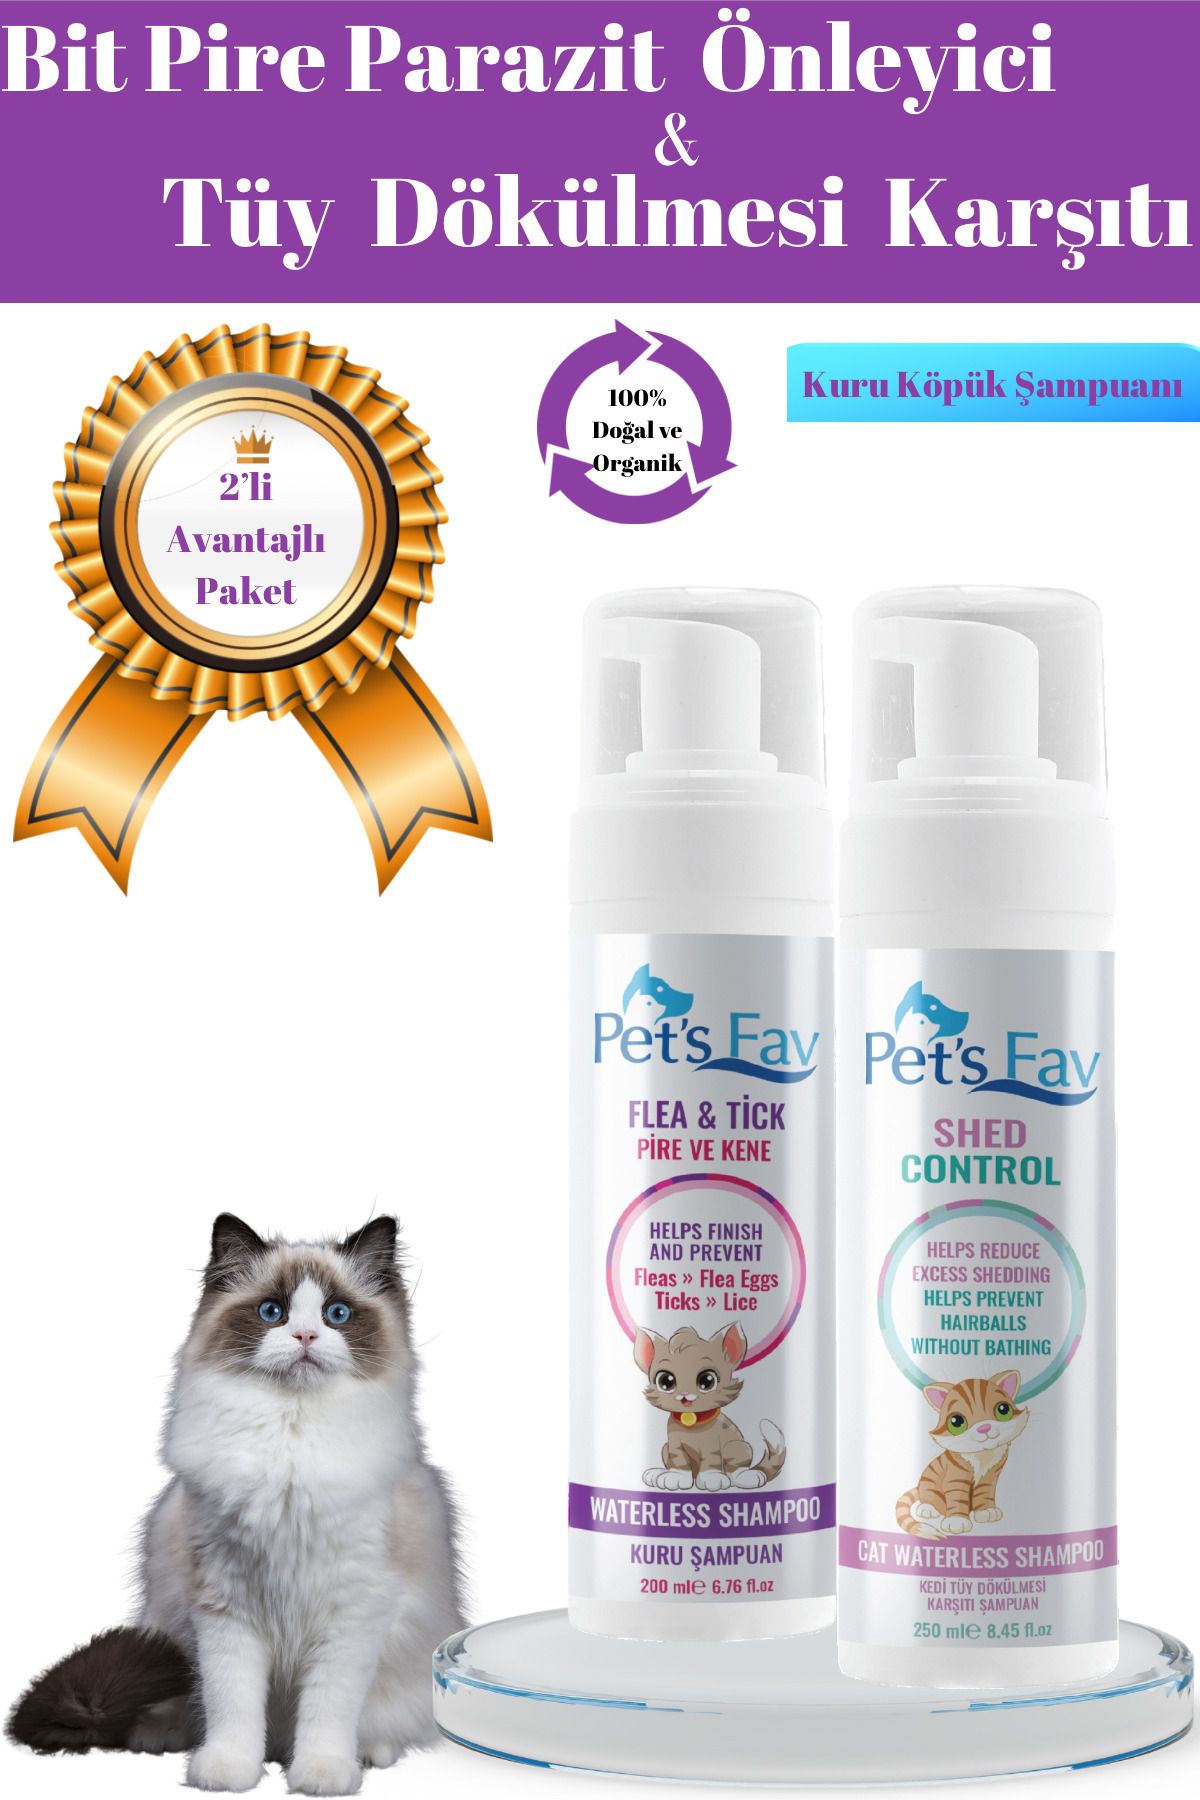 Pets Fav Kedi Bit Pire Kene ve Parazit Önleyici Kedi Tüy Dökülmesi Karşıtı Doğal Kuru Köpük Şampuanı Seti